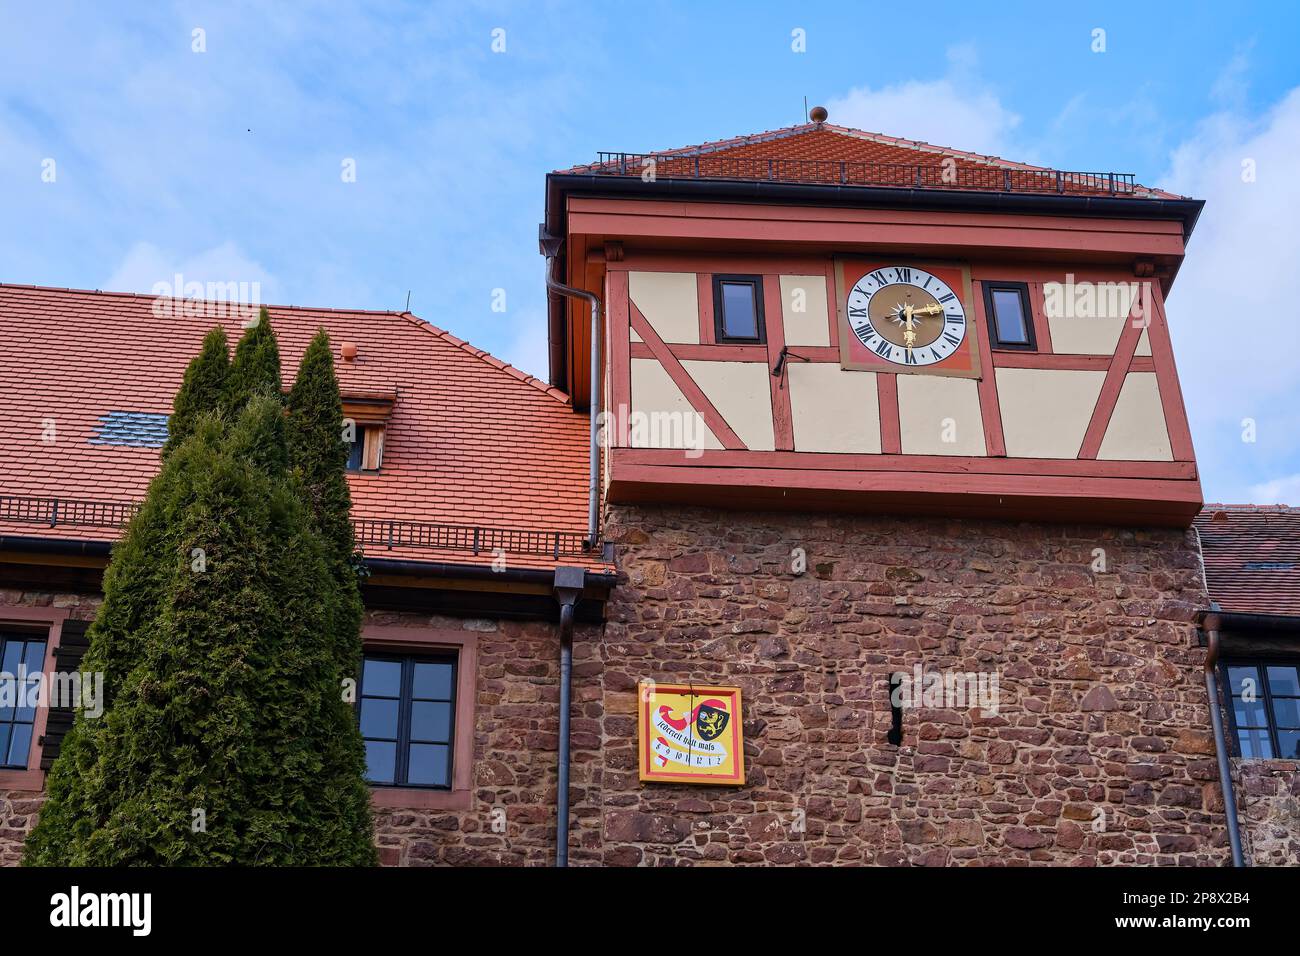 Mittelalterliches Stadttor Von Dilsberg, Neckargemund, Baden-Württemberg, Deutschland, Europa. Stockfoto